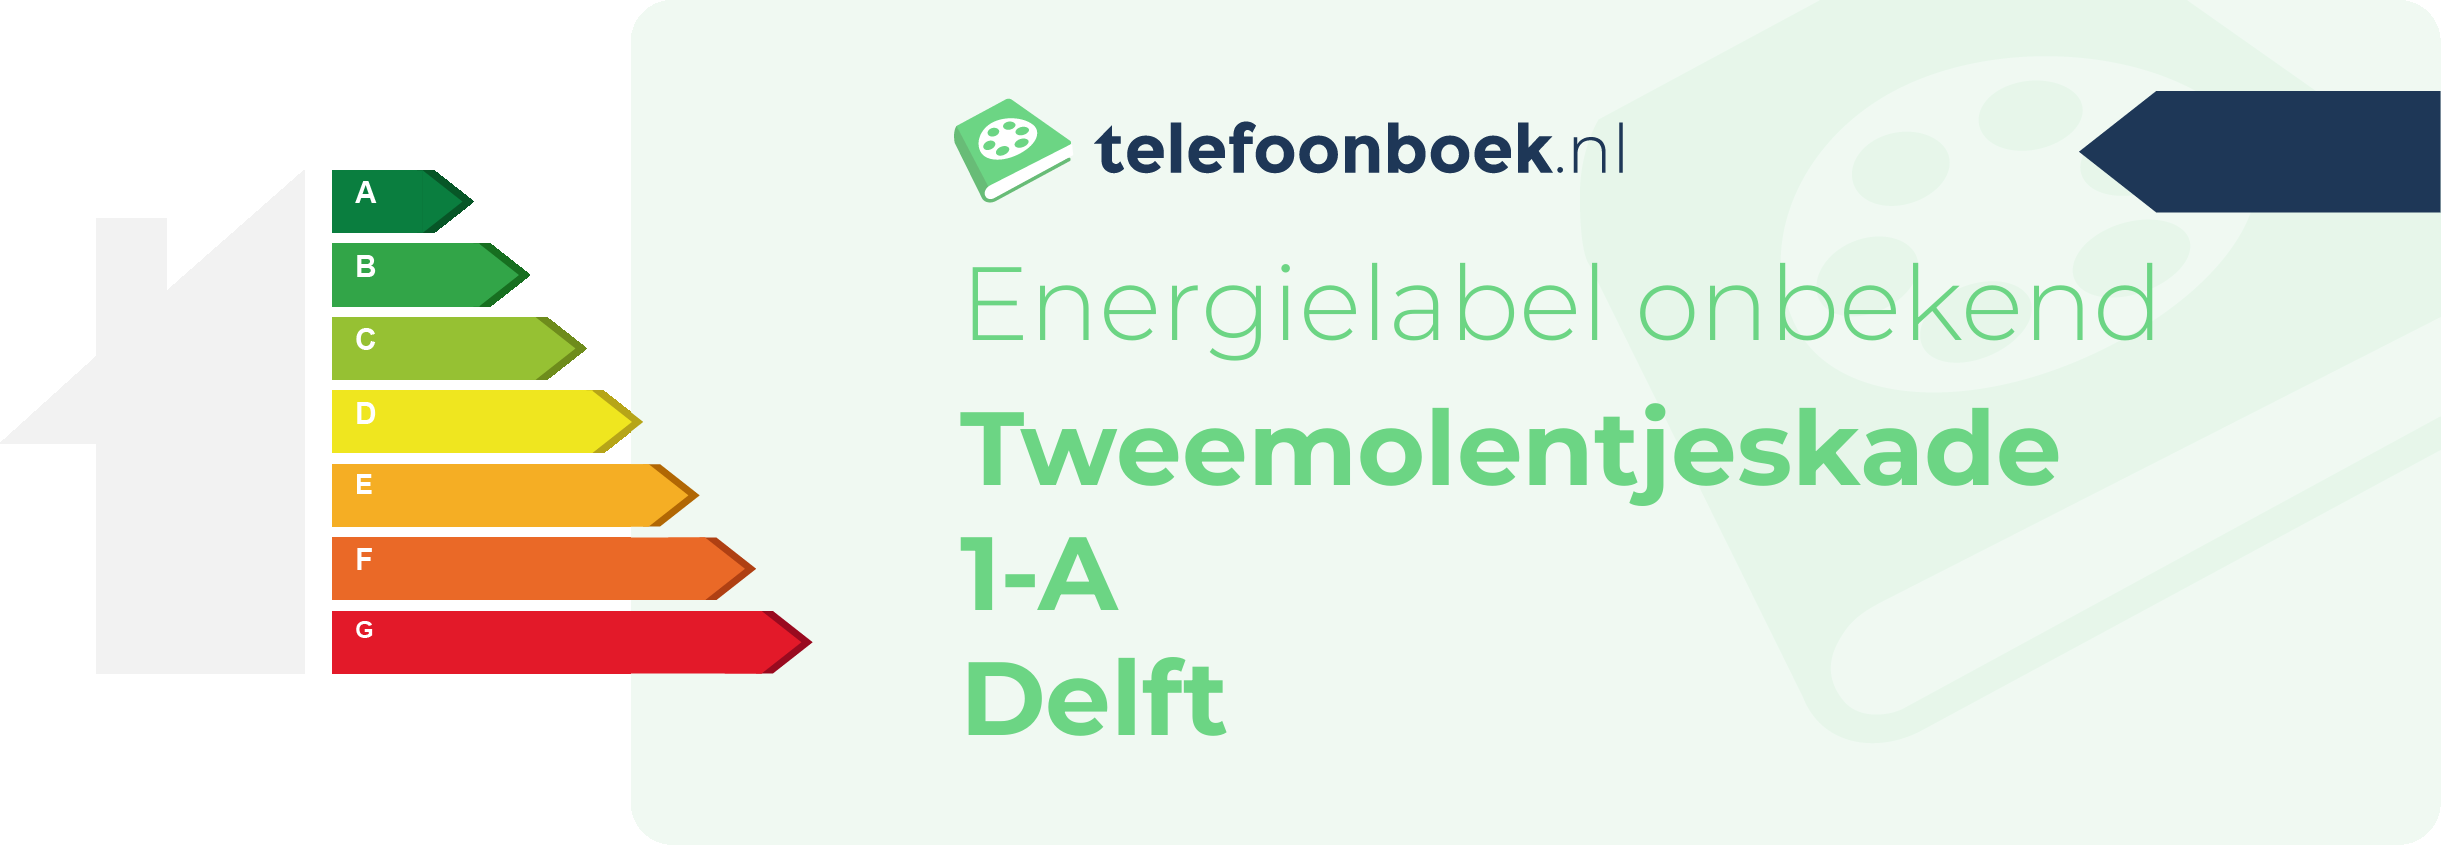 Energielabel Tweemolentjeskade 1-A Delft